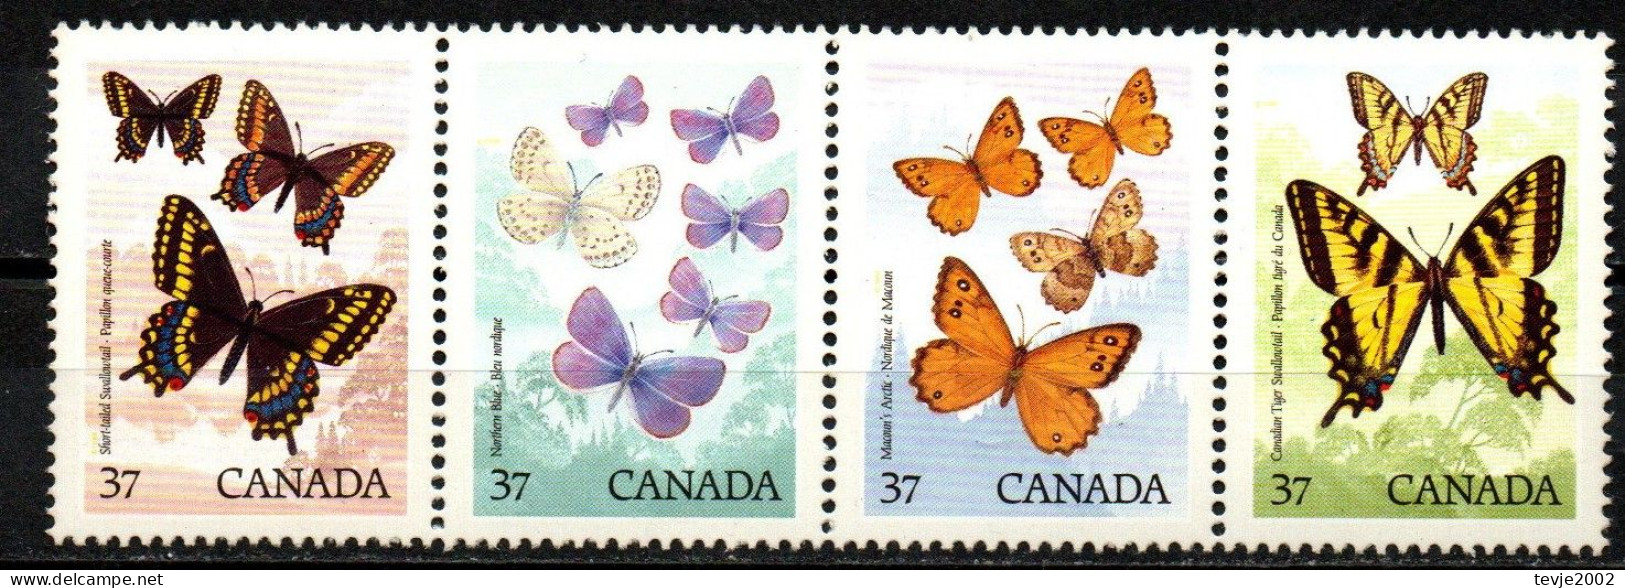 Kanada Canada 1988 - Mi.Nr. 1090 - 1093 - Postfrisch MNH - Tiere Animals Schmetterlinge Butterflies - Farfalle